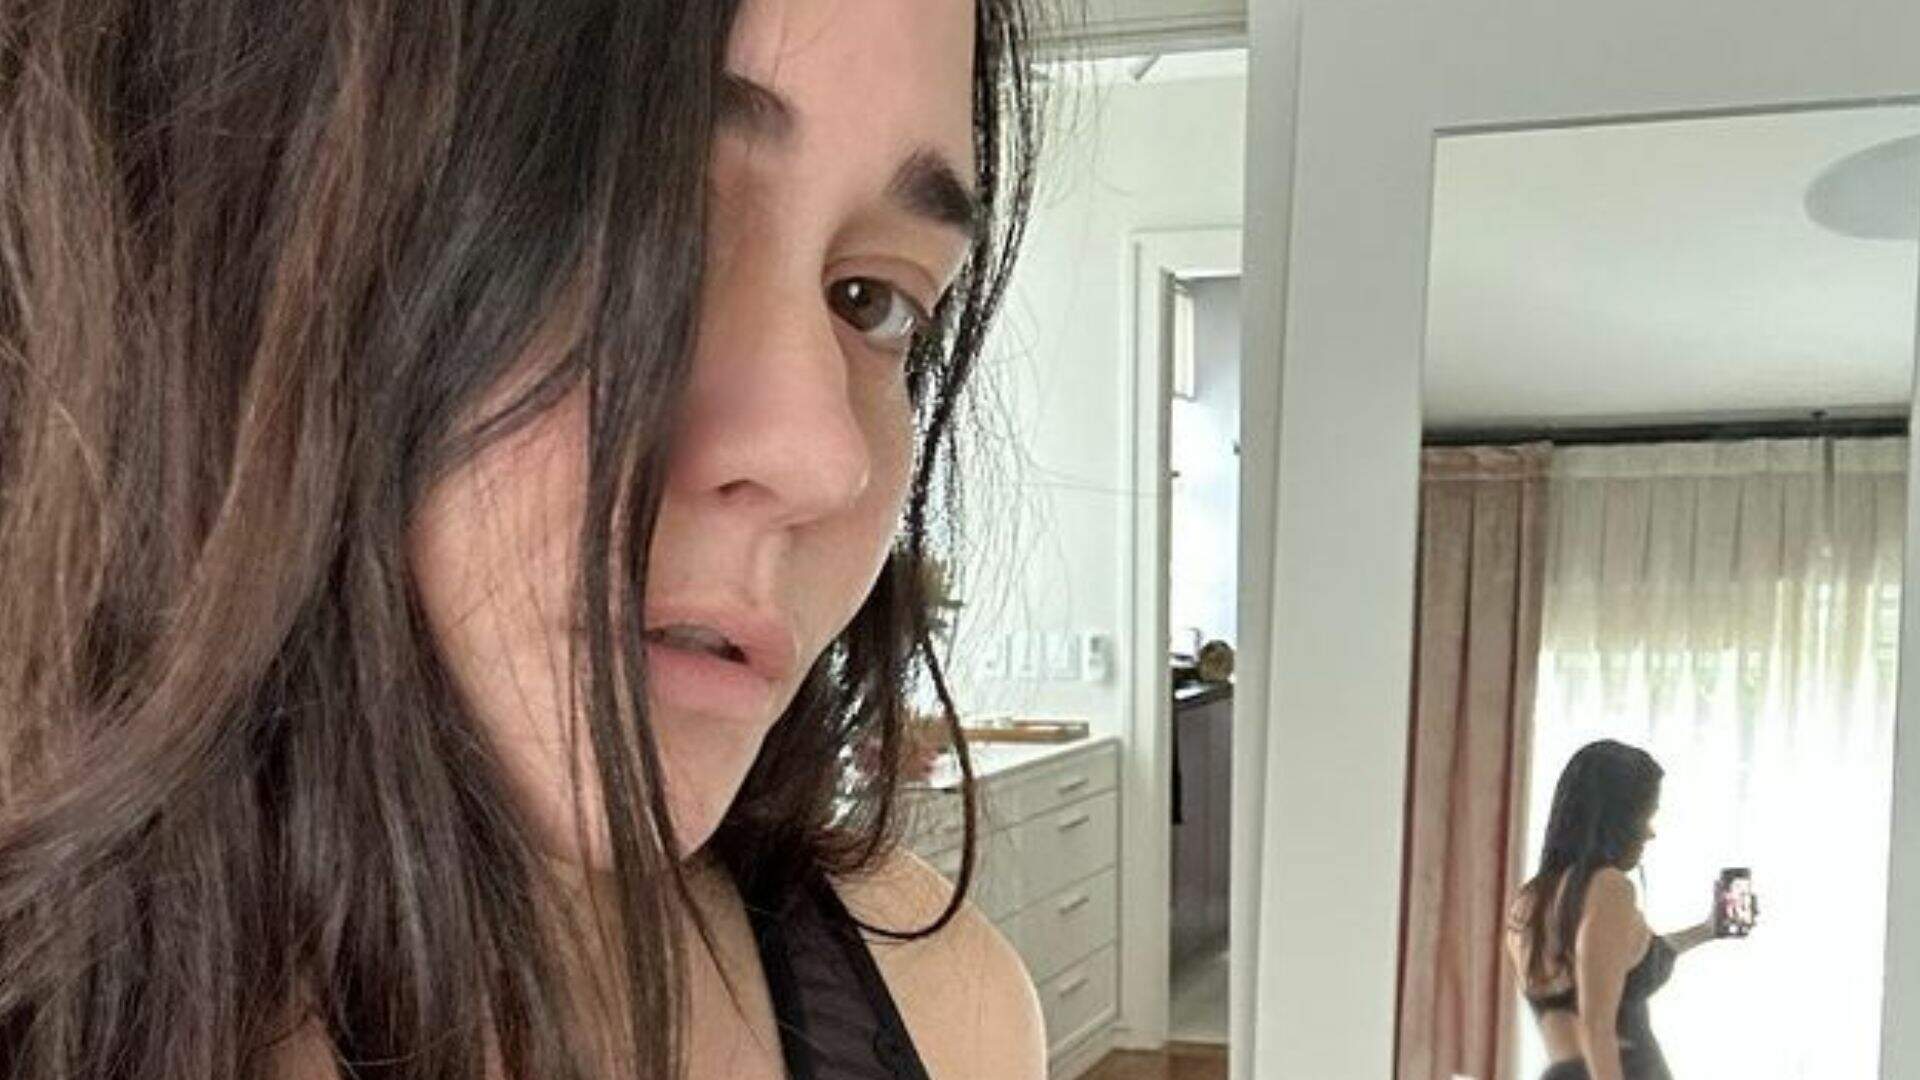 Alessandra Negrini dispensa as roupas no quarto e espelho acaba mostrando bumbum na nuca: “Lingerie sumiu” - Metropolitana FM